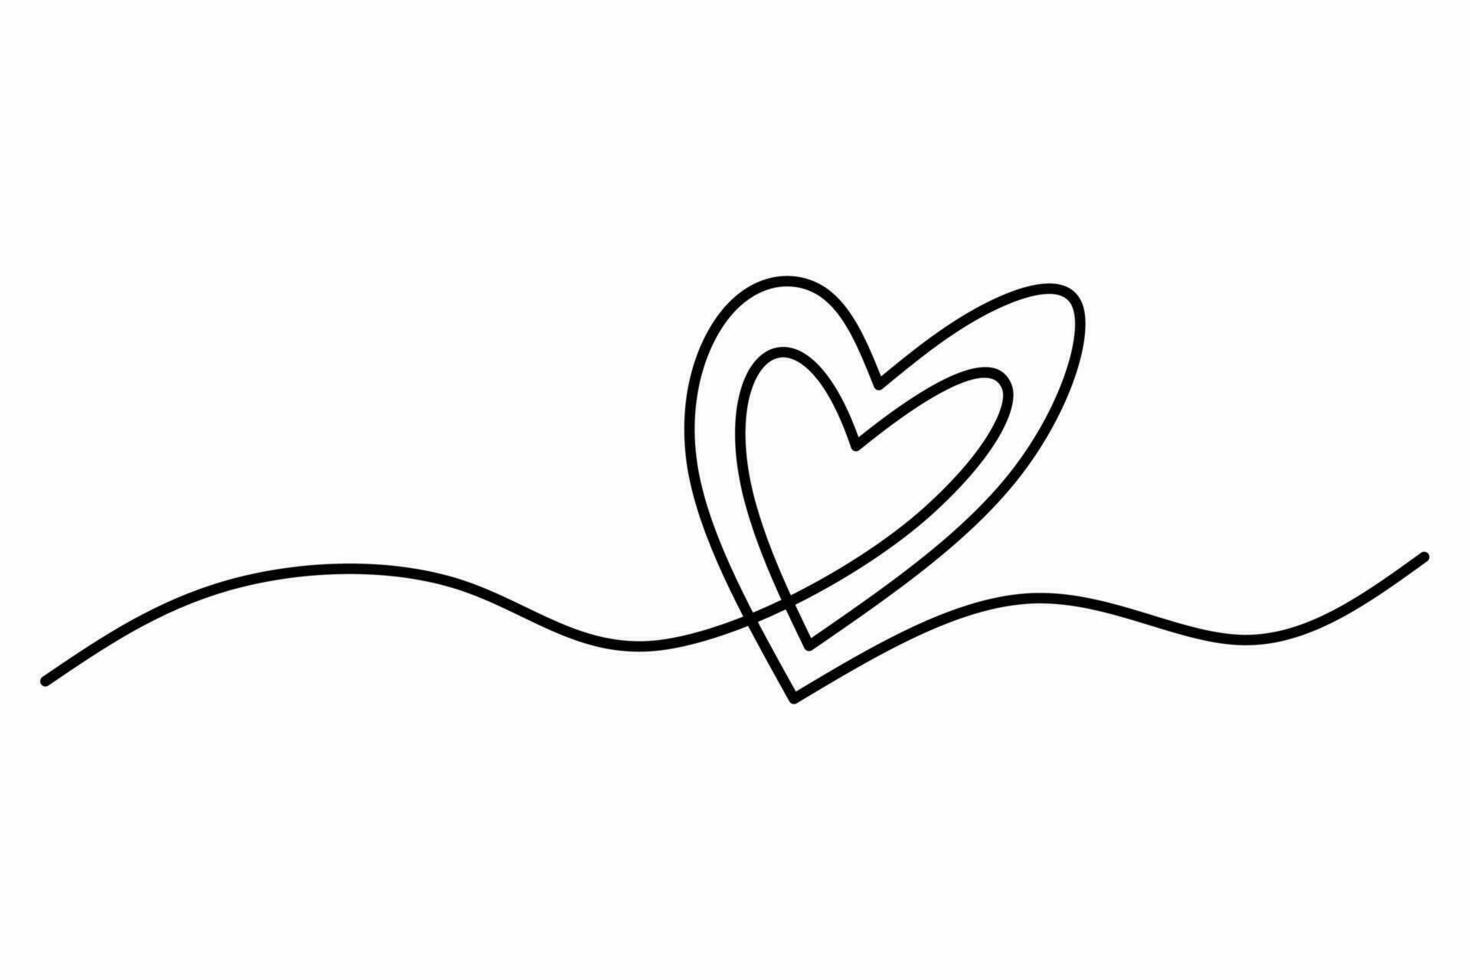 cœur continu un ligne dessin, double cœur main dessiné, noir et blanc vecteur minimaliste illustration de l'amour concept fabriqué de un doubler.